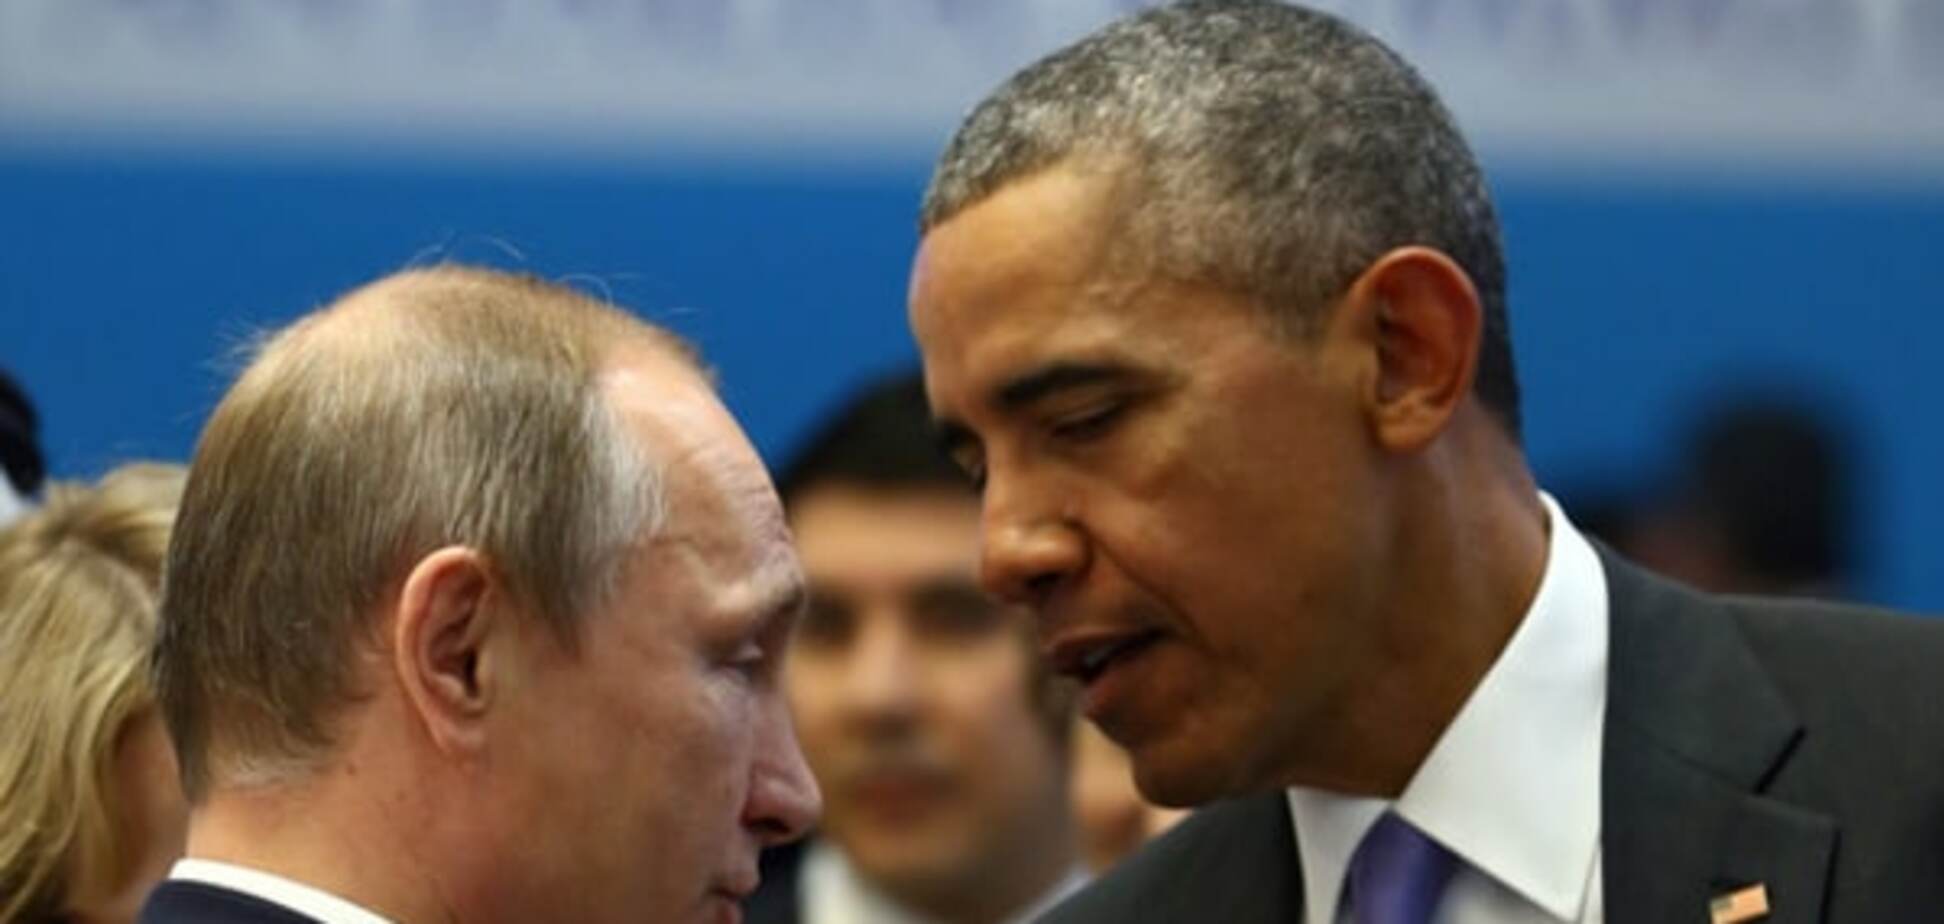 Обама намекнул Путину, что вопрос Украины пора закрывать - журналист